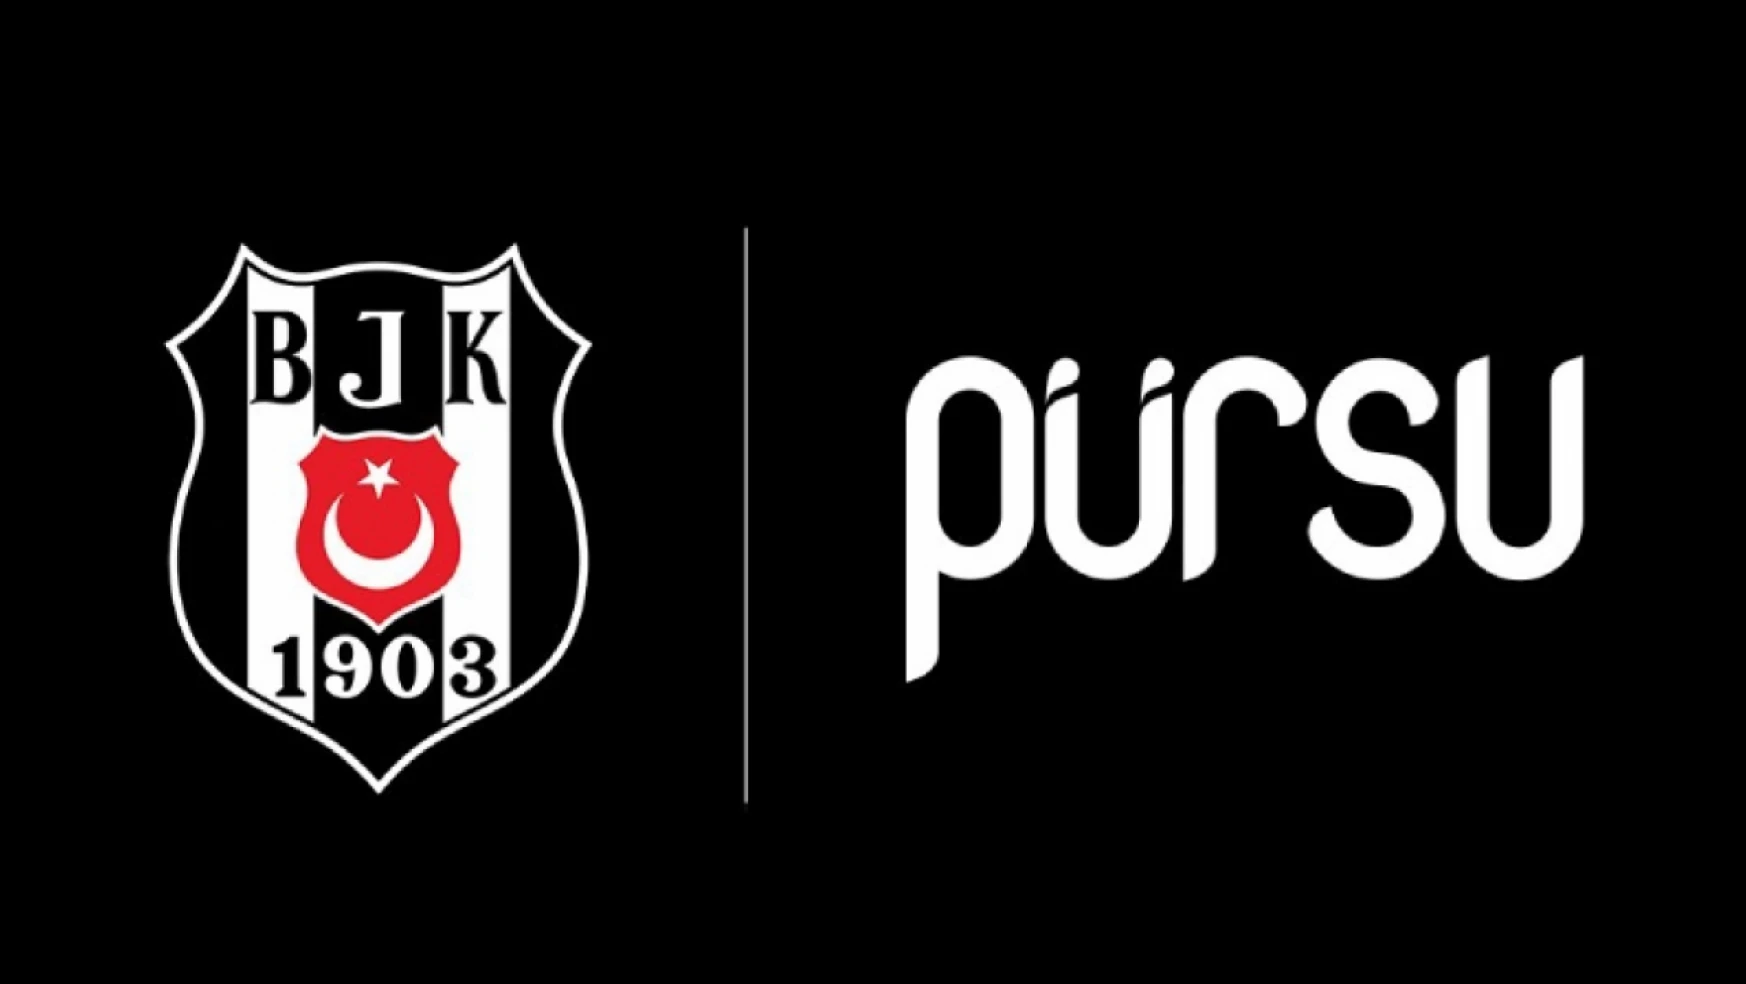 Pürsu'dan Beşiktaş Hentbol'a destek